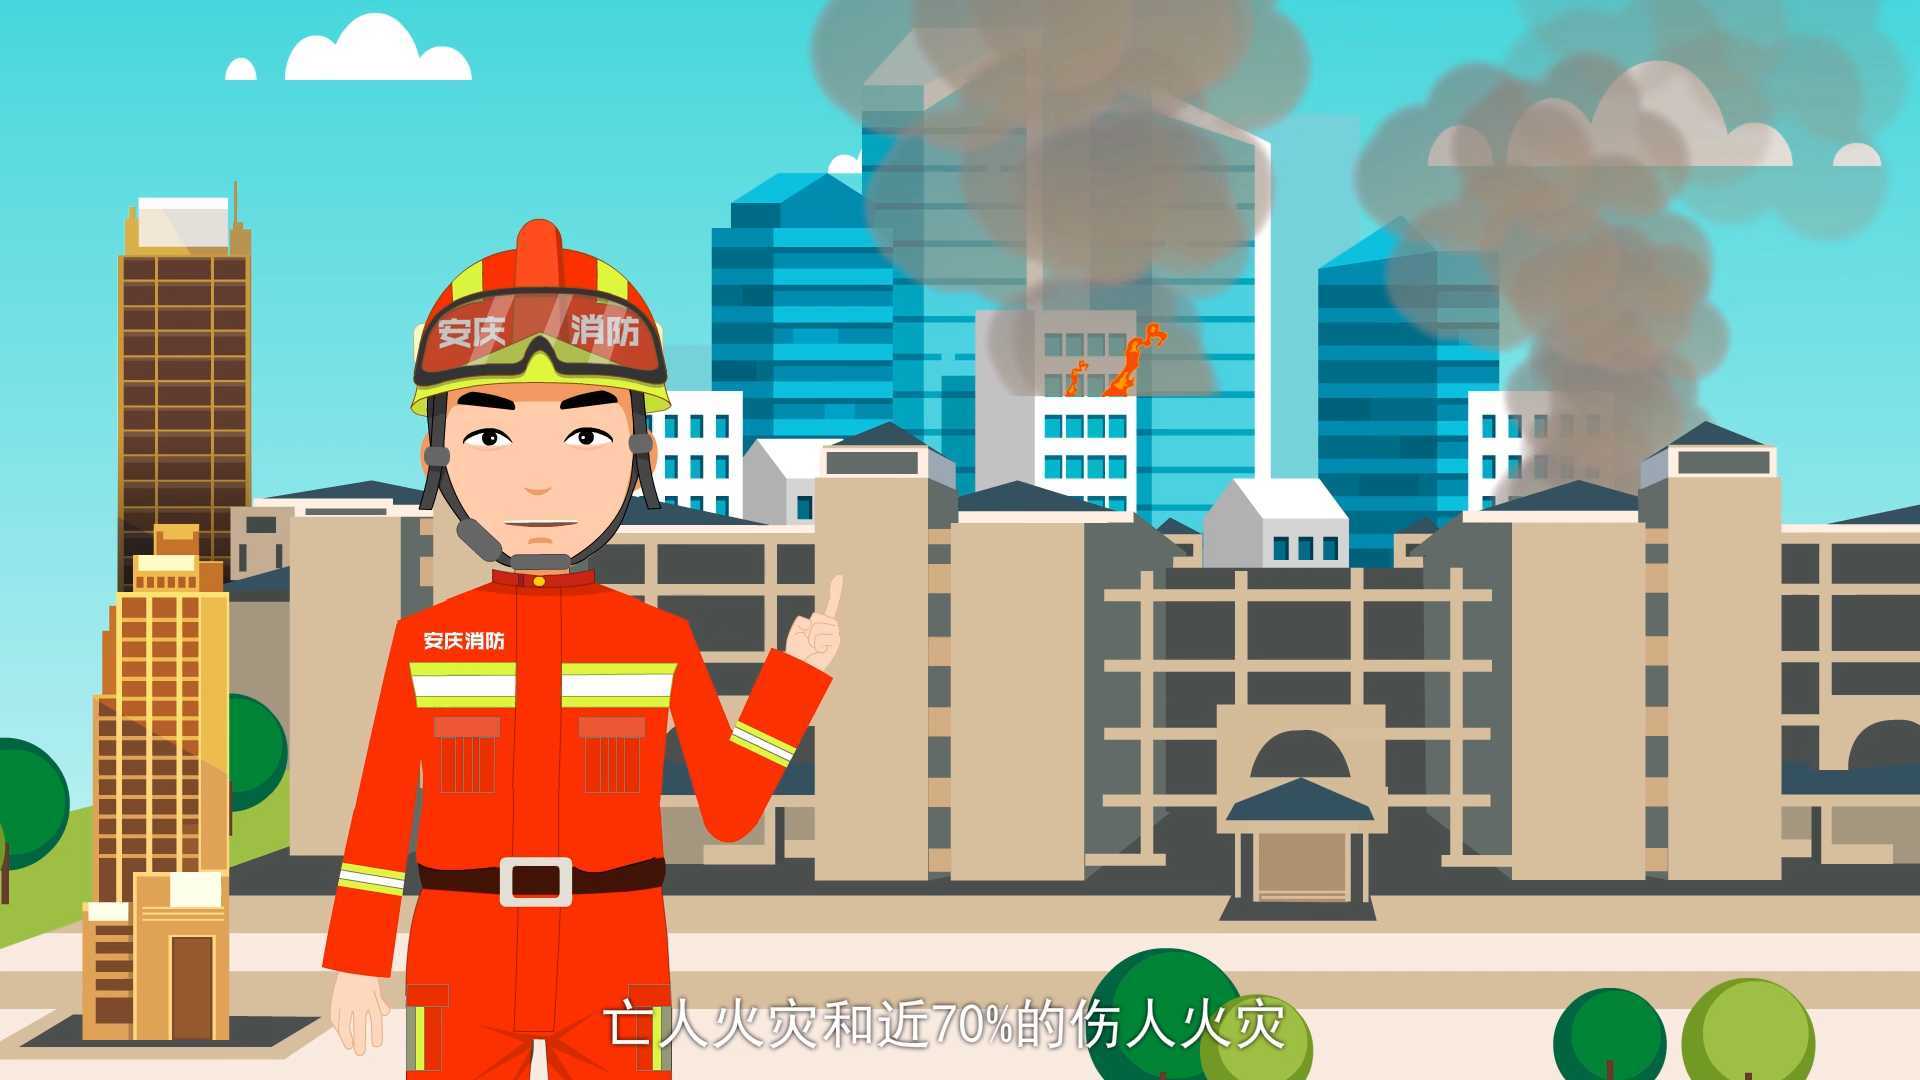 MG动画-消防动画-消防知识安全讲解动画